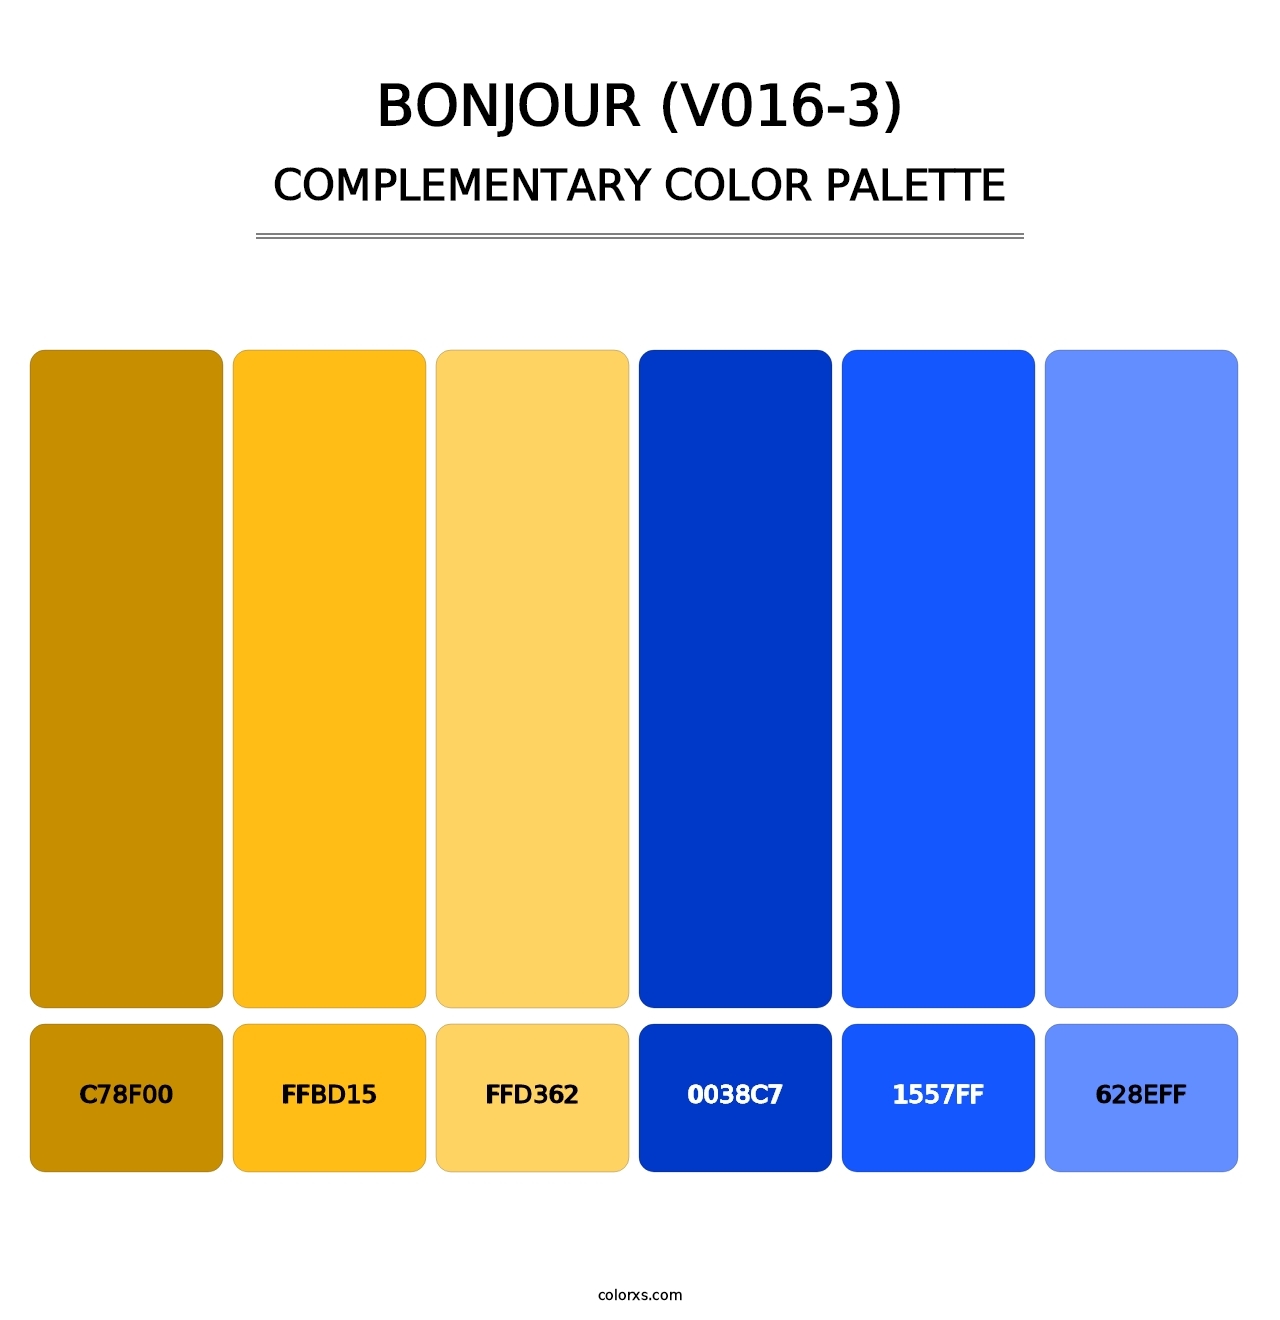 Bonjour (V016-3) - Complementary Color Palette